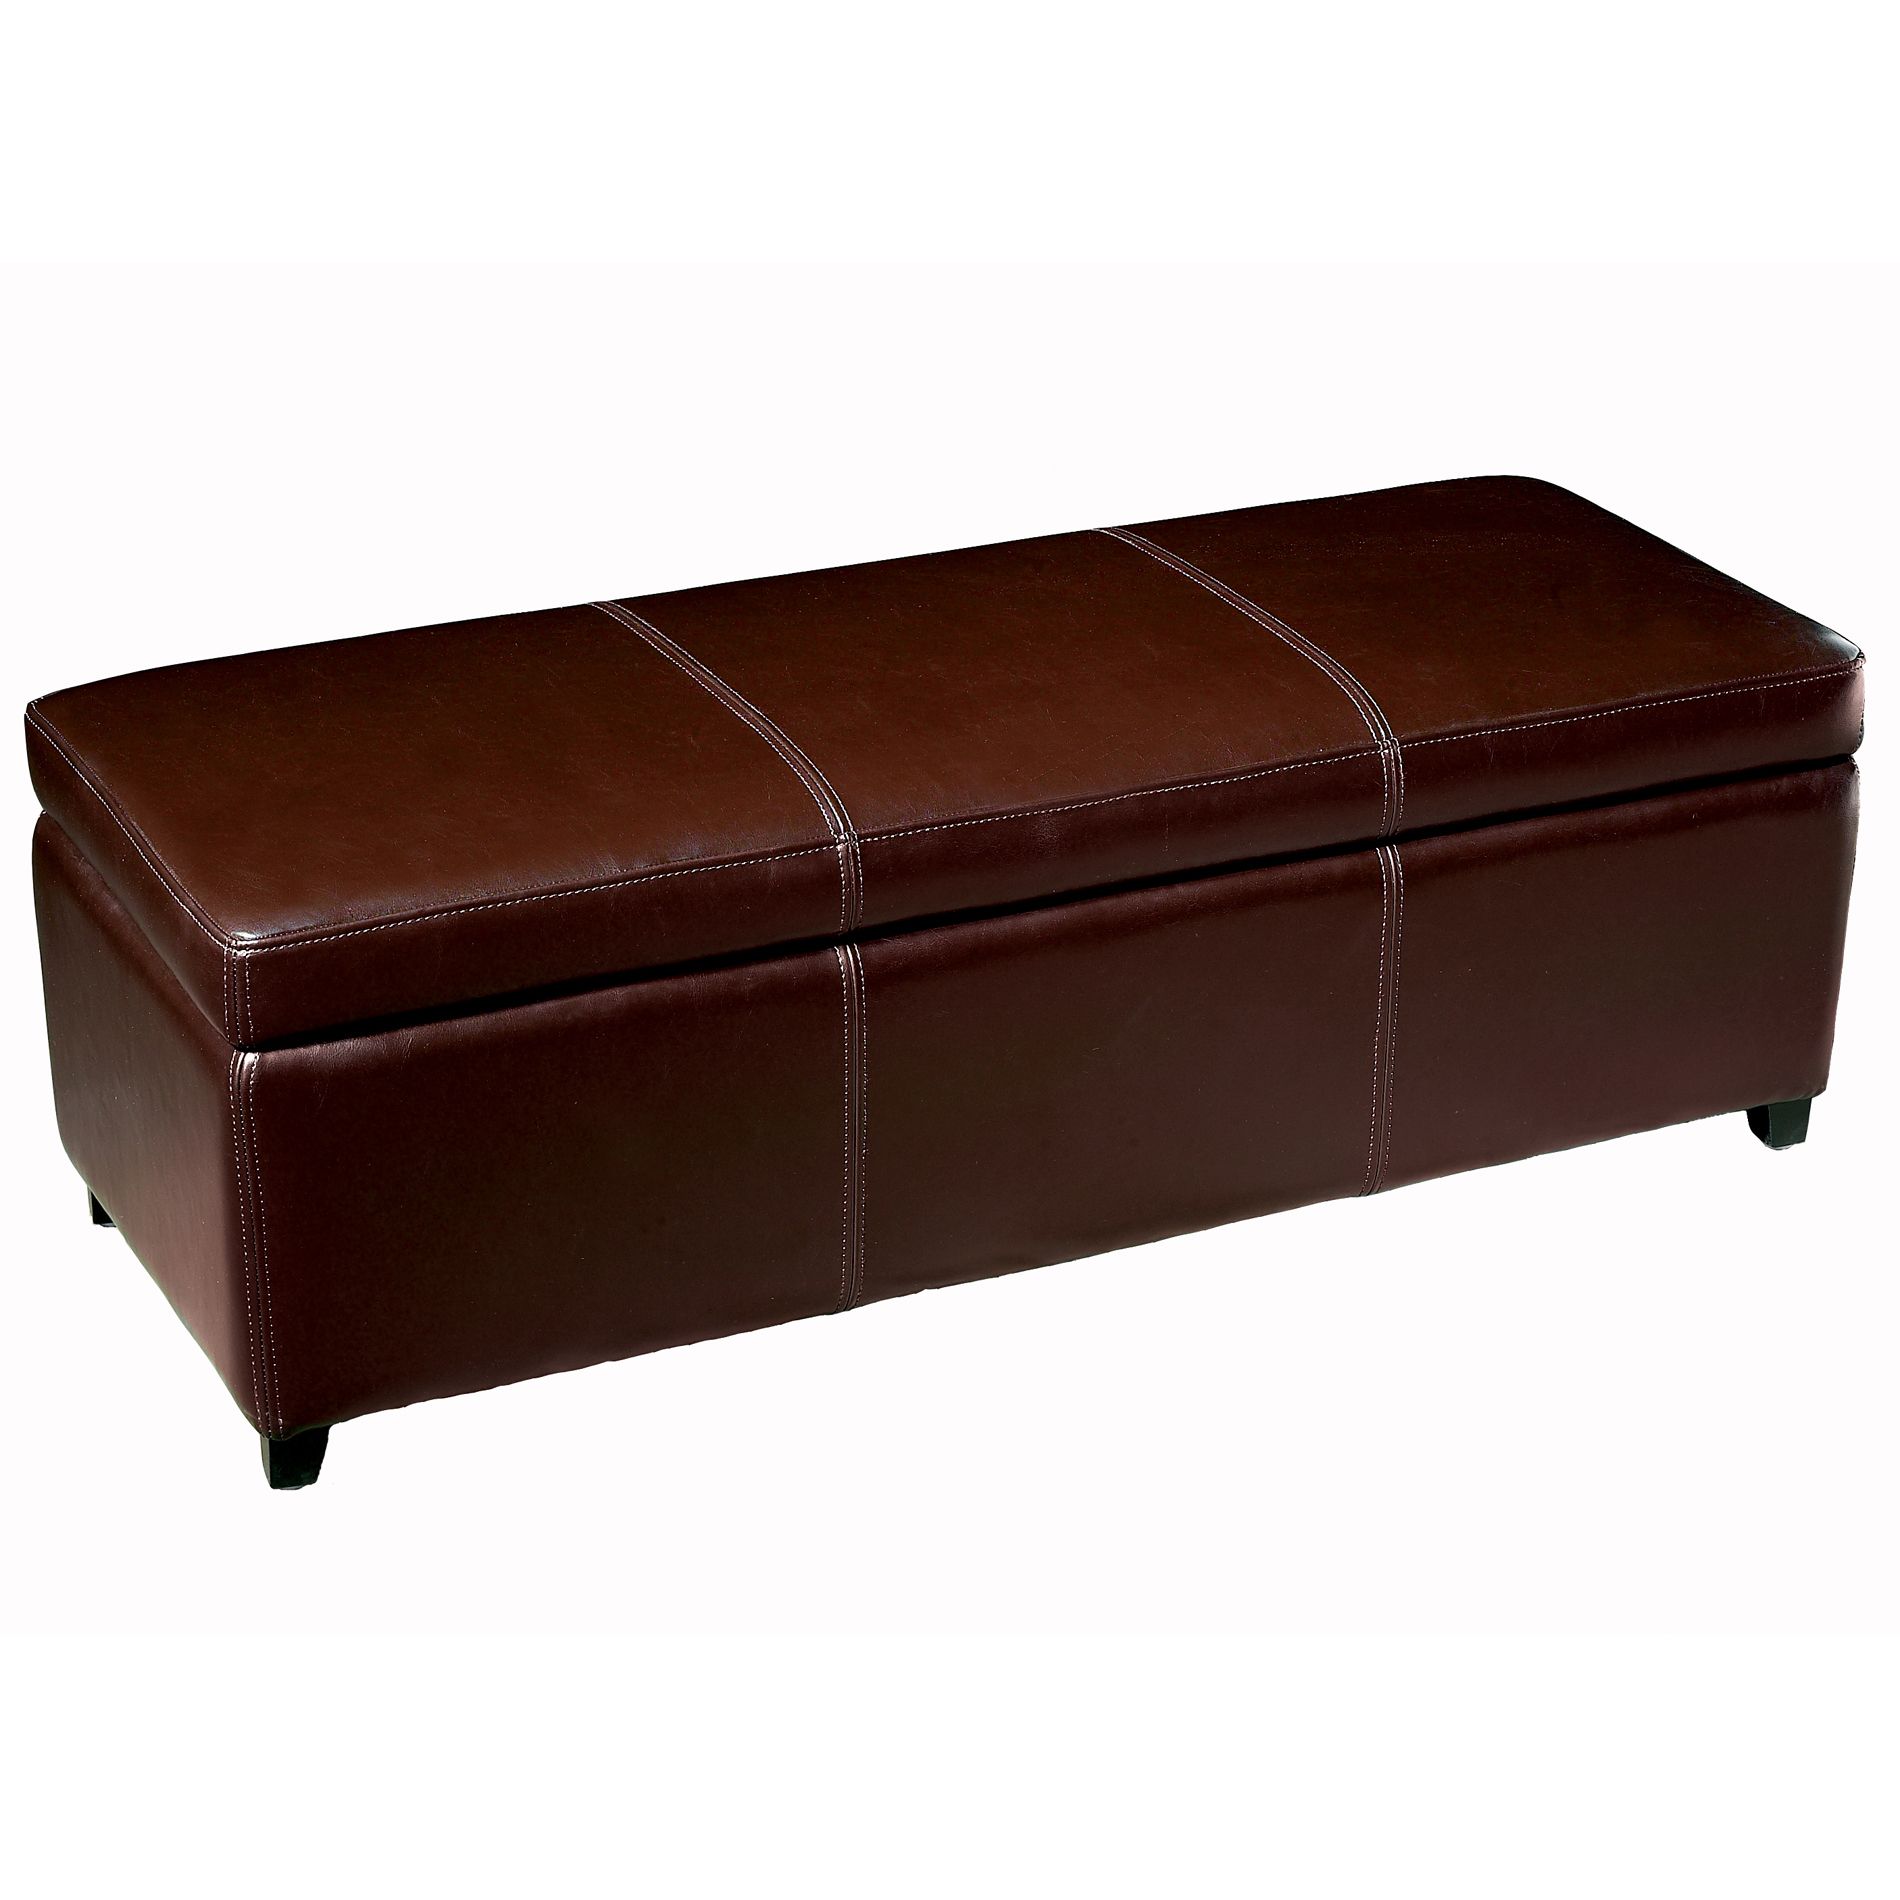 Baxton Studio Coral 16-1/2"H x 47-1/5"W x 17-7/10"D Leather Storage Bench - Dark Brown